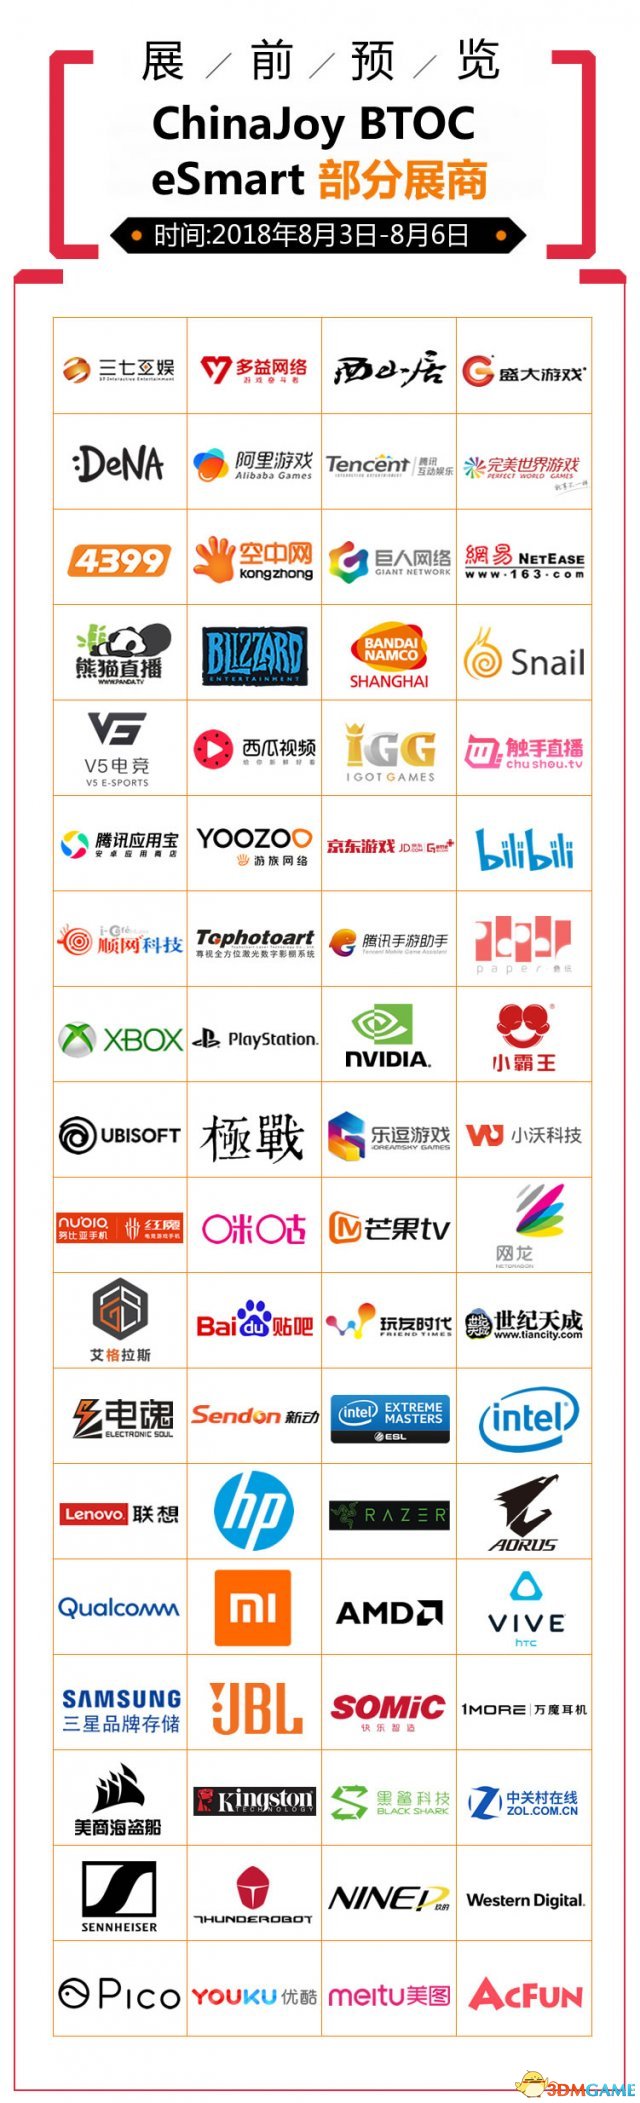 2018年第106届ChinaJoy展前预览(BTOC篇)正式支布!